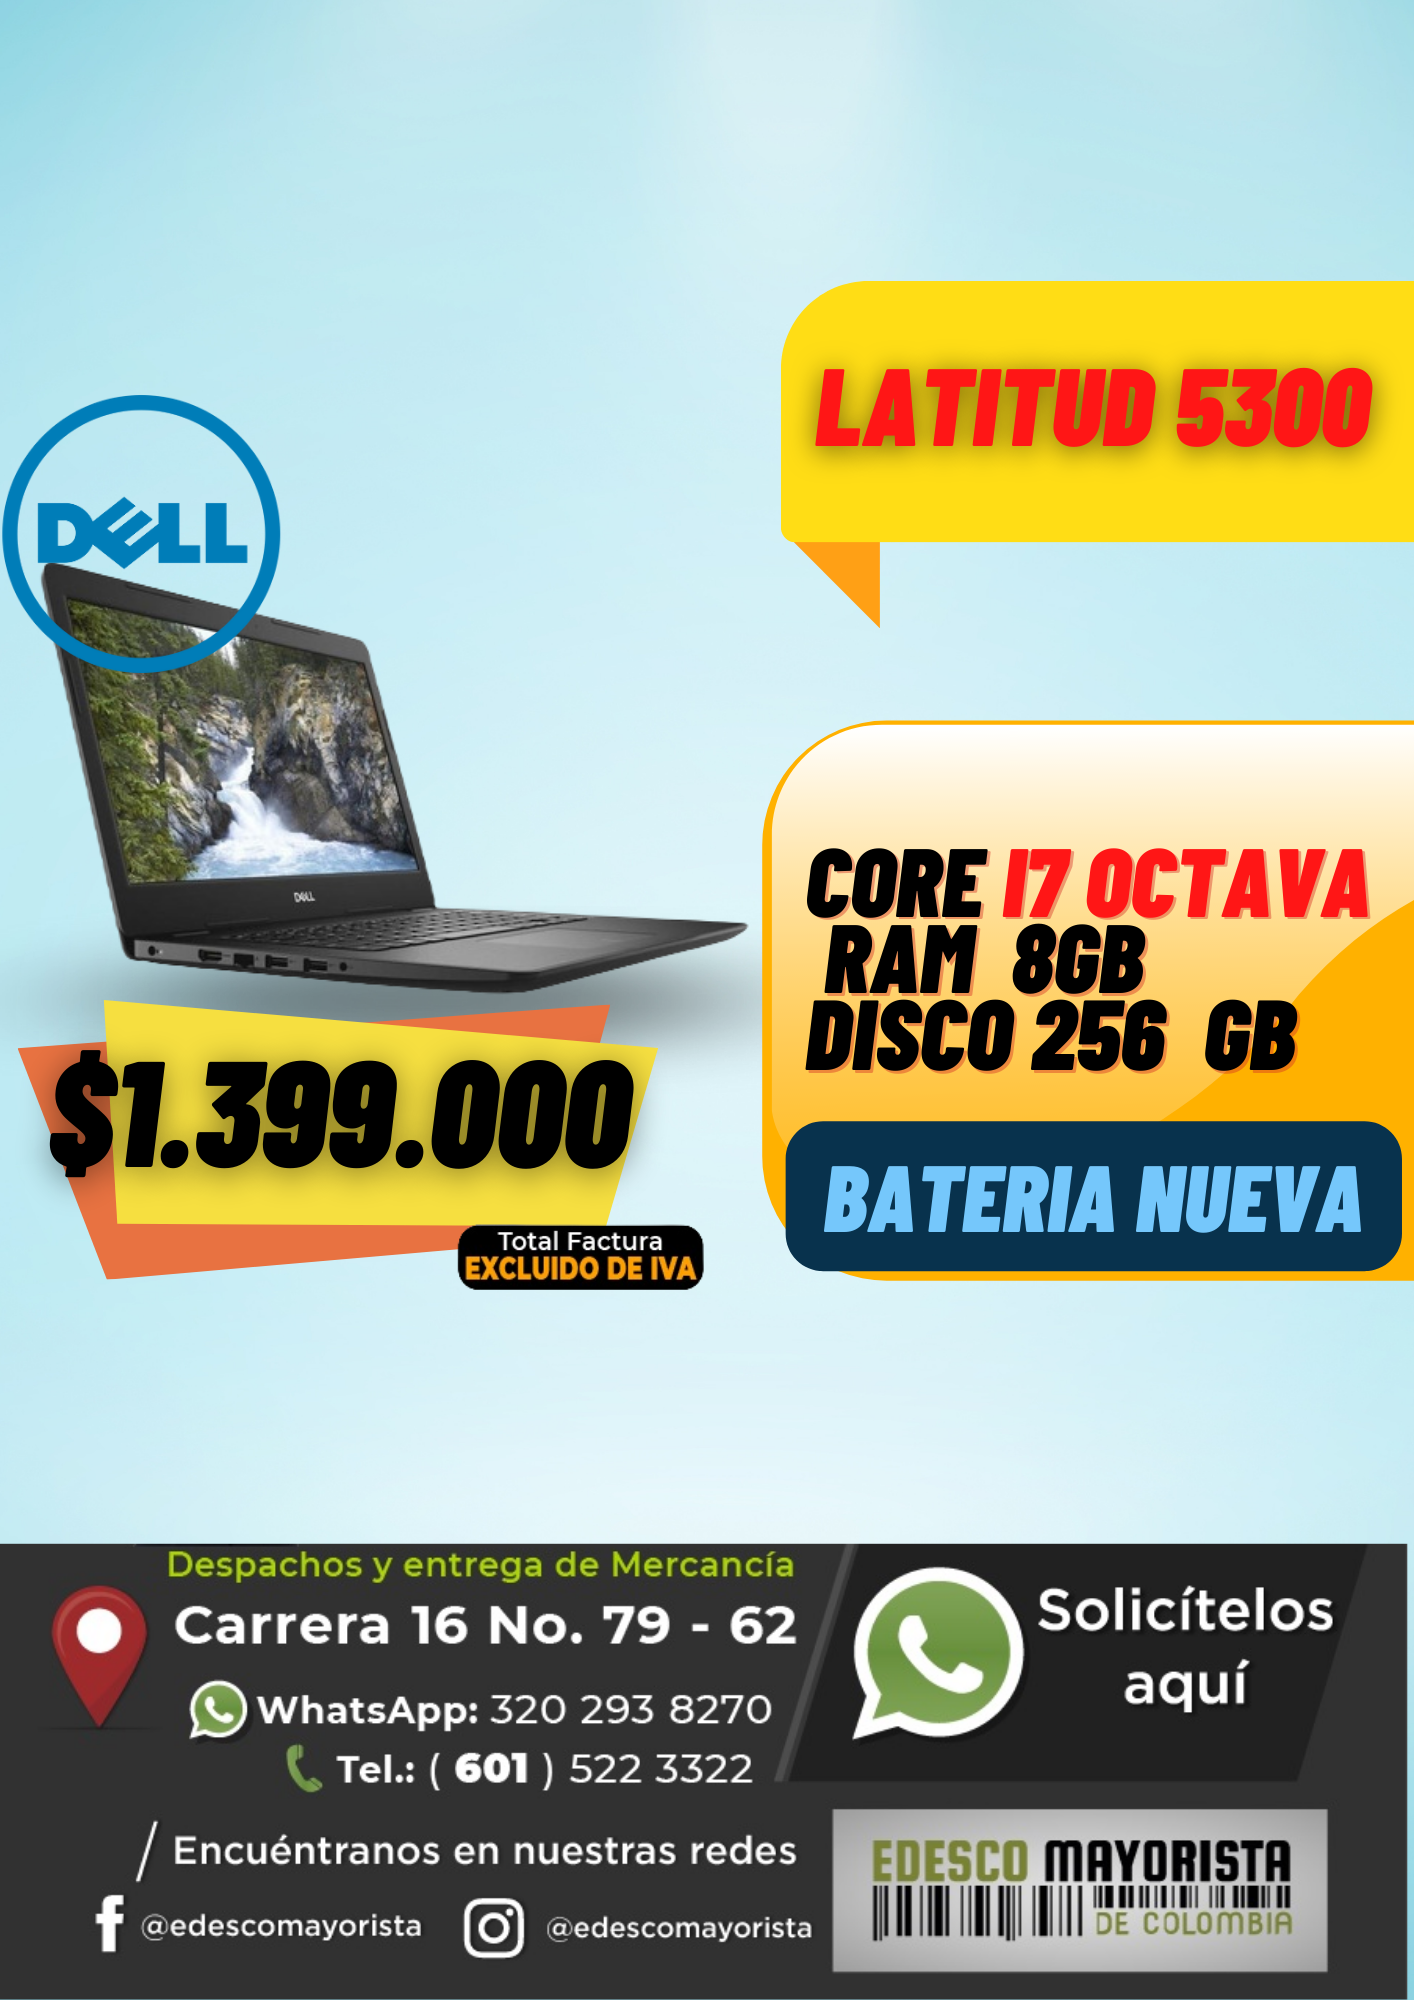 Dell Latitud 5300 Pila nueva